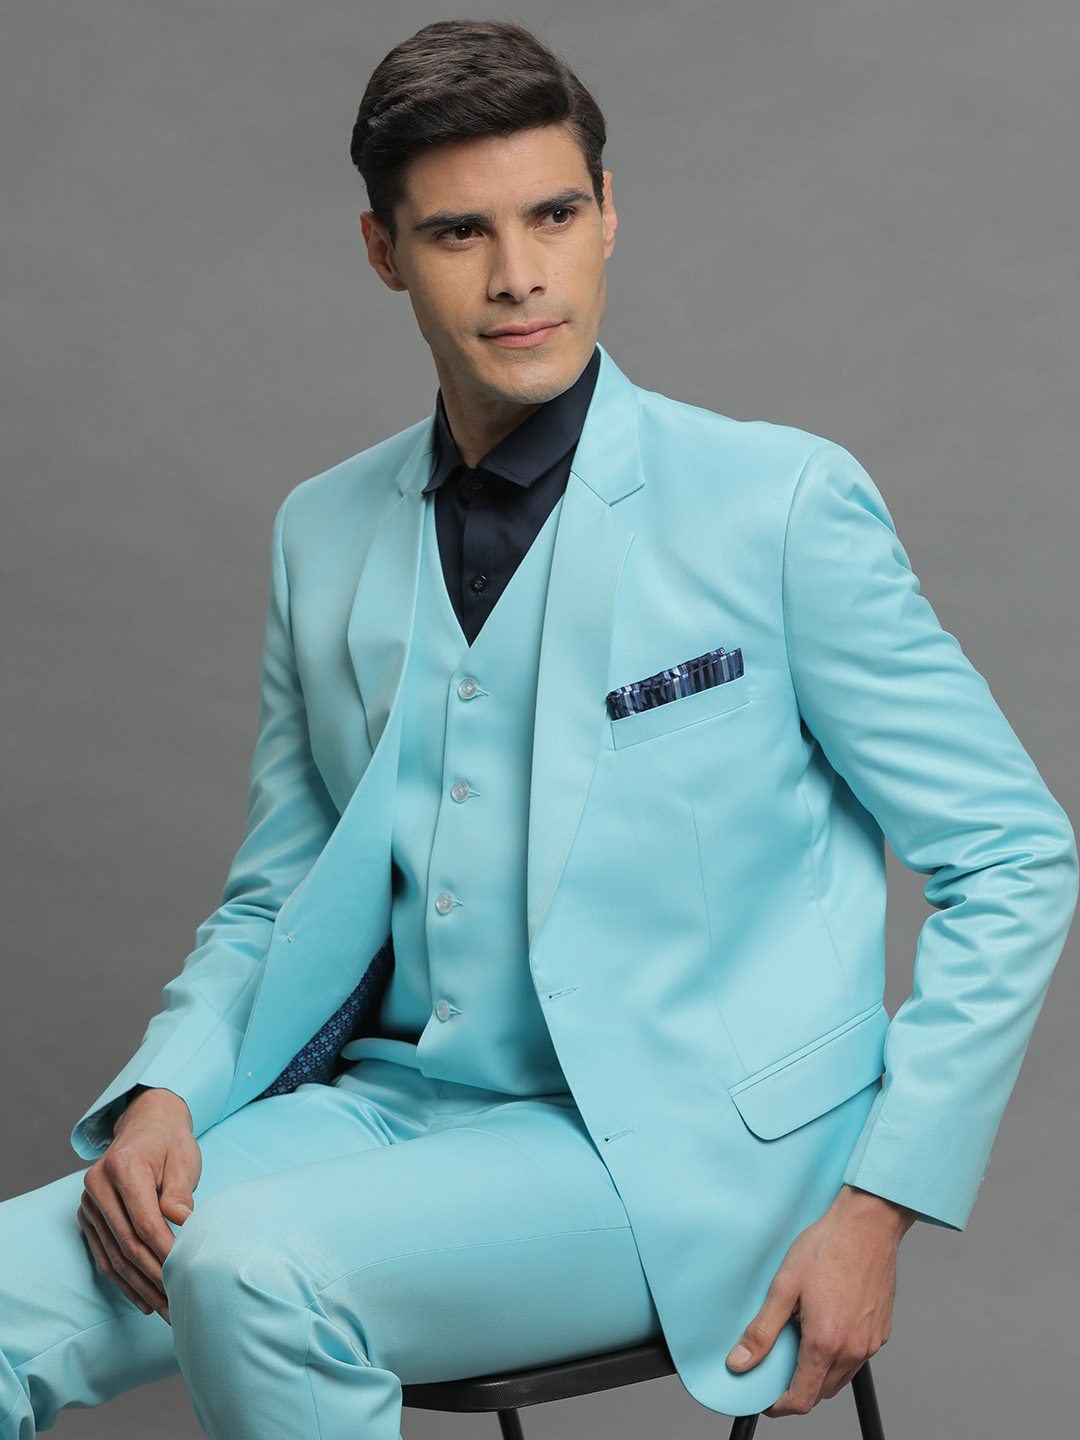 Neon Blue 3 Piece Suit